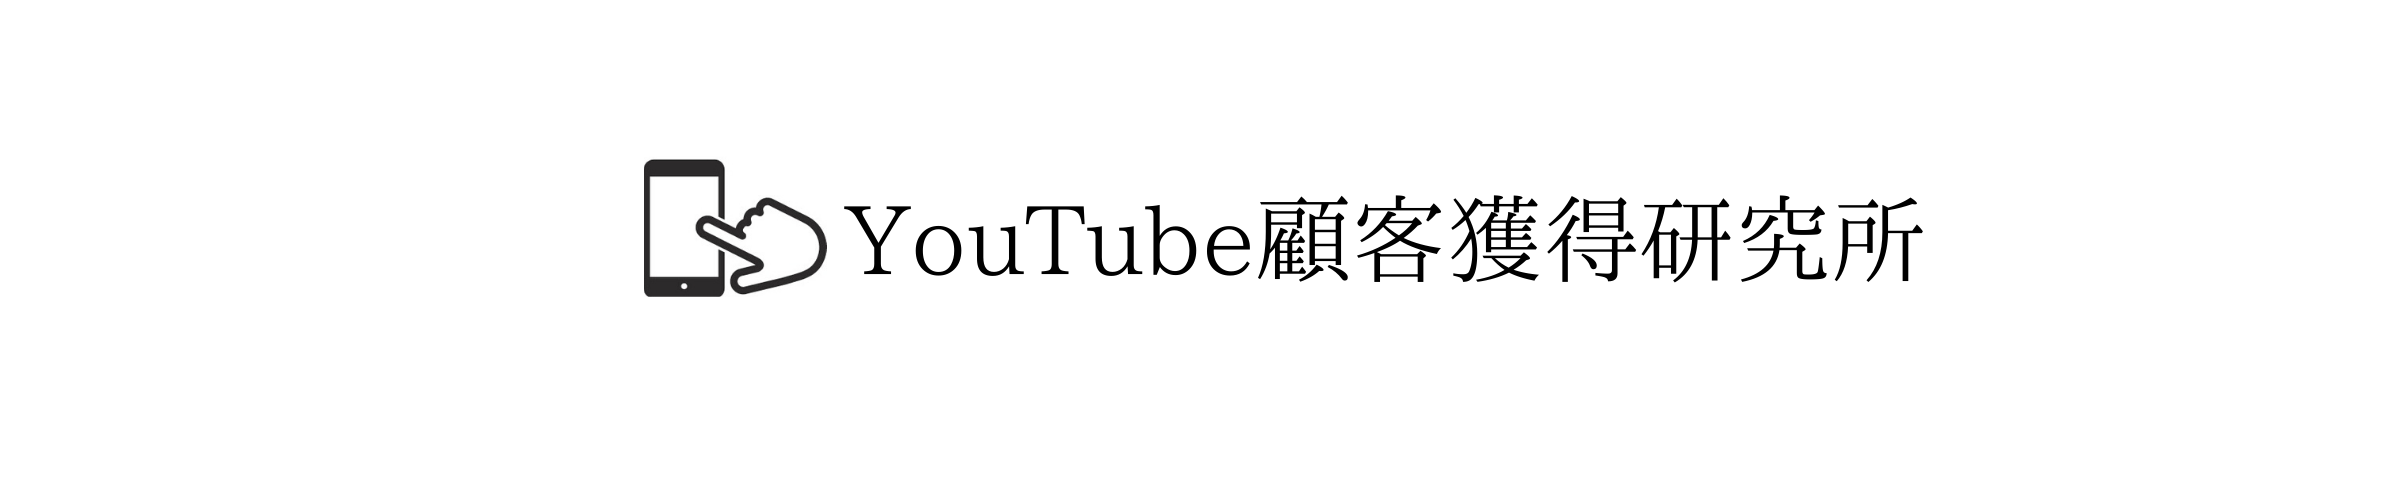 回避 Youtube 著作権違反で失敗しない為の3つのポイント Youtube顧客獲得研究所